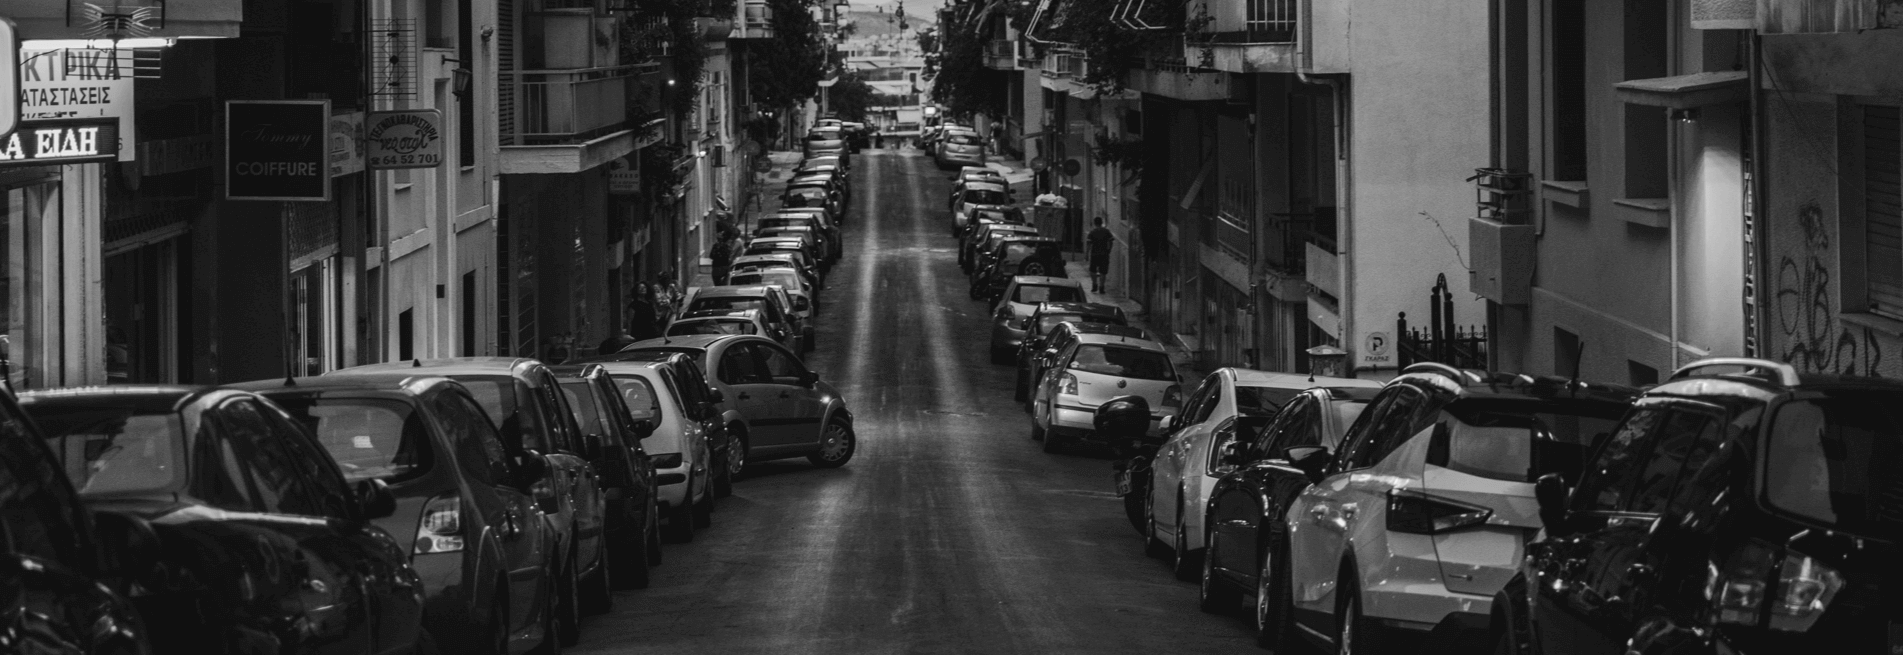 Ασπρόμαυρ εικόνα δρόμος στην πόληε με παρκαρισμένα αυτοκίνητα